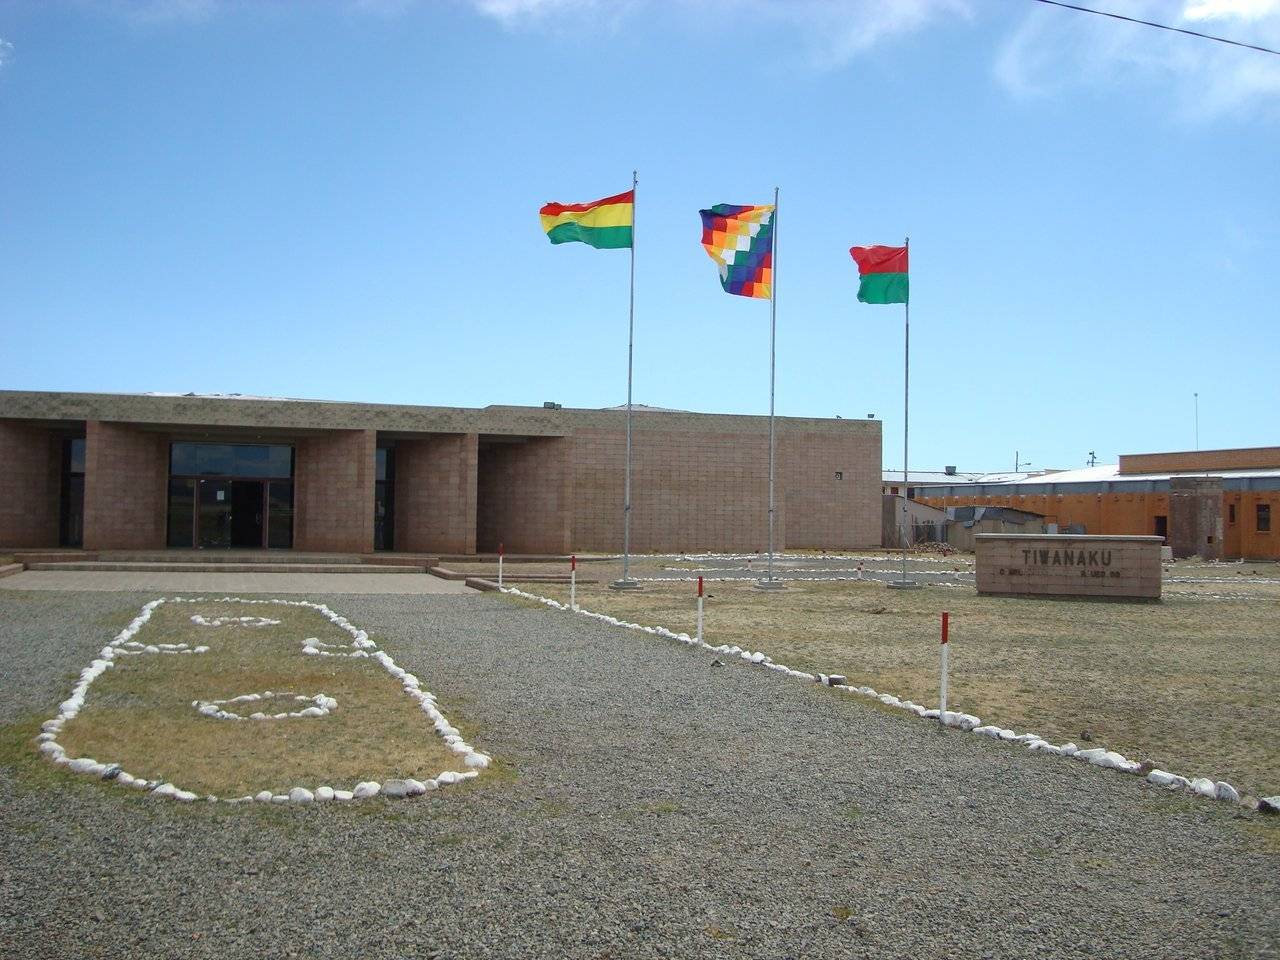 Archaeological city of Tiwanaku